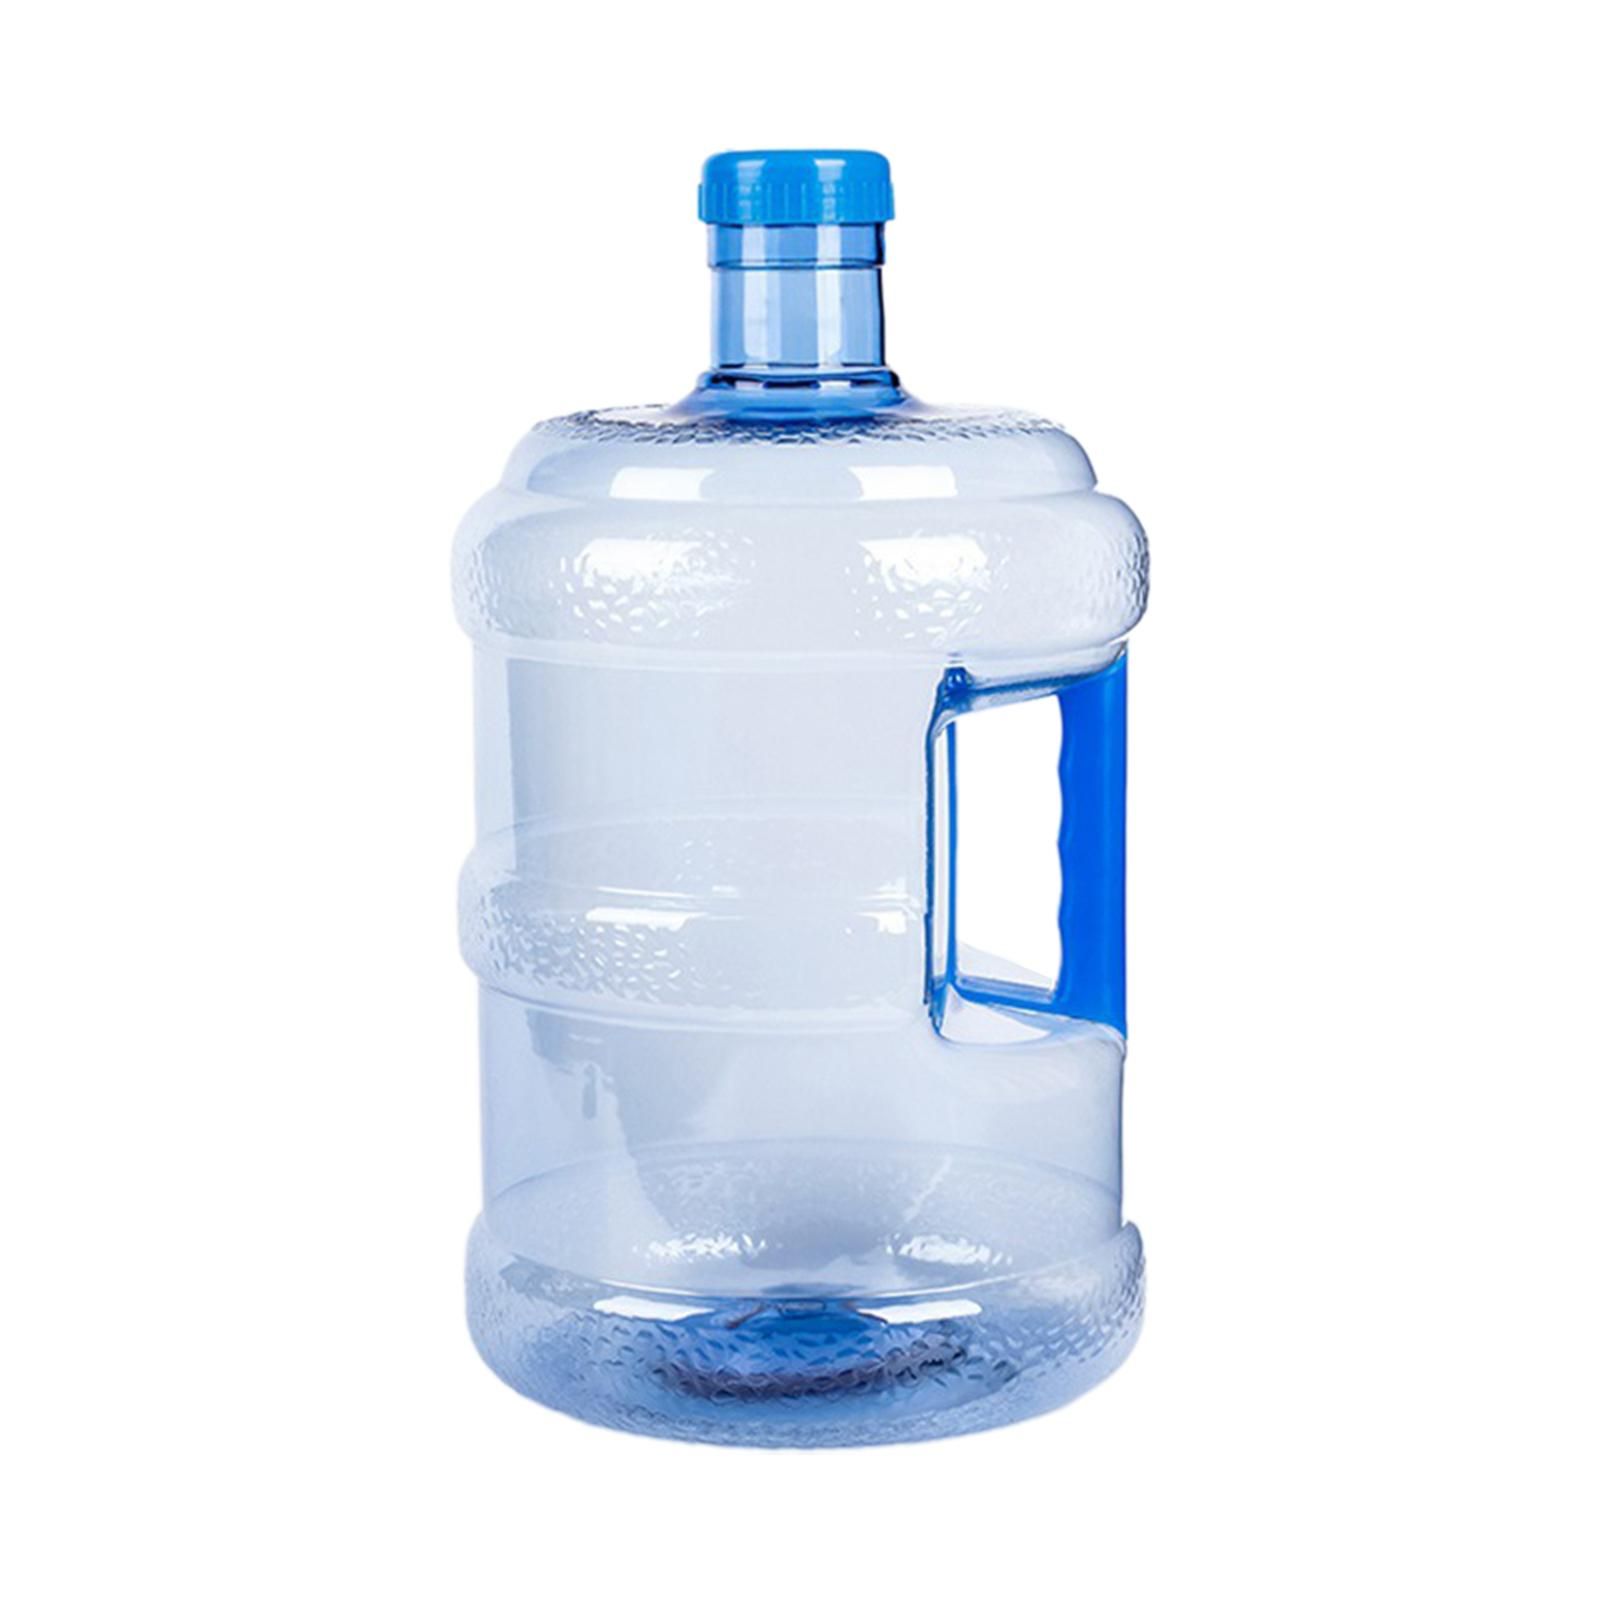 Бутылка из под кулера. Кулер для 5л бутылей MCM. Бутыль 10л ПЭТ 4630057. 5 L Water Bottle. Бутыль для воды 12.5 литров.